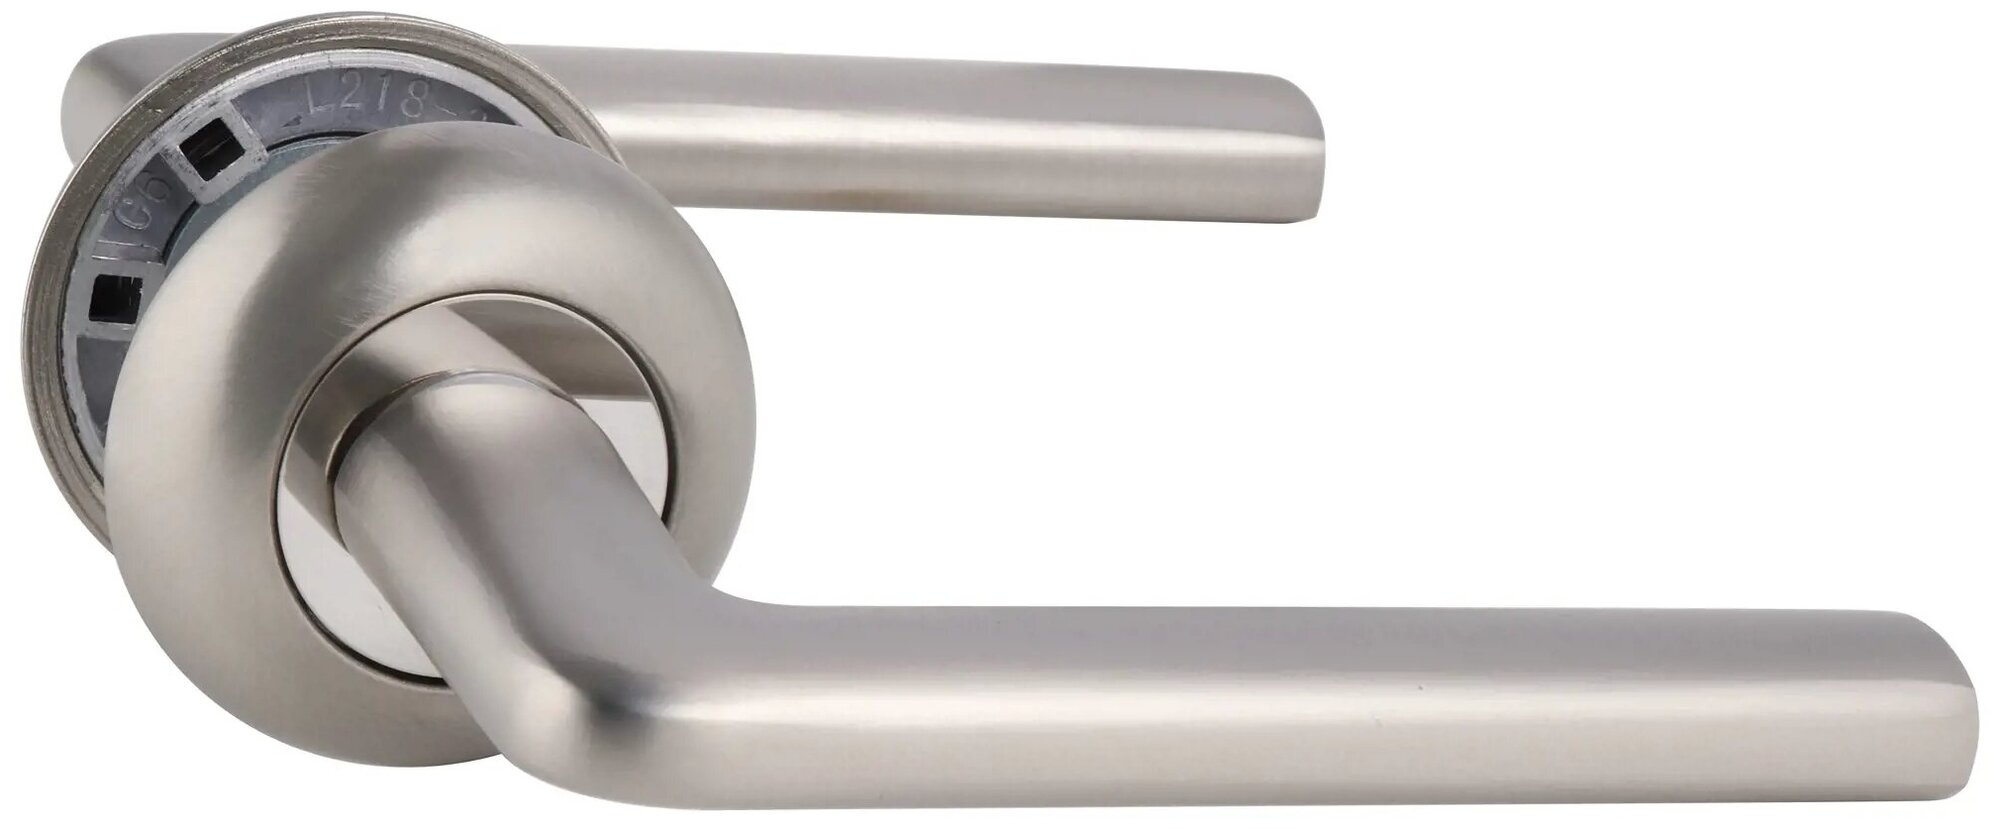 Дверные ручки Edson 21-Z01 без запирания алюминий никелированное покрытие цвет матовый никель